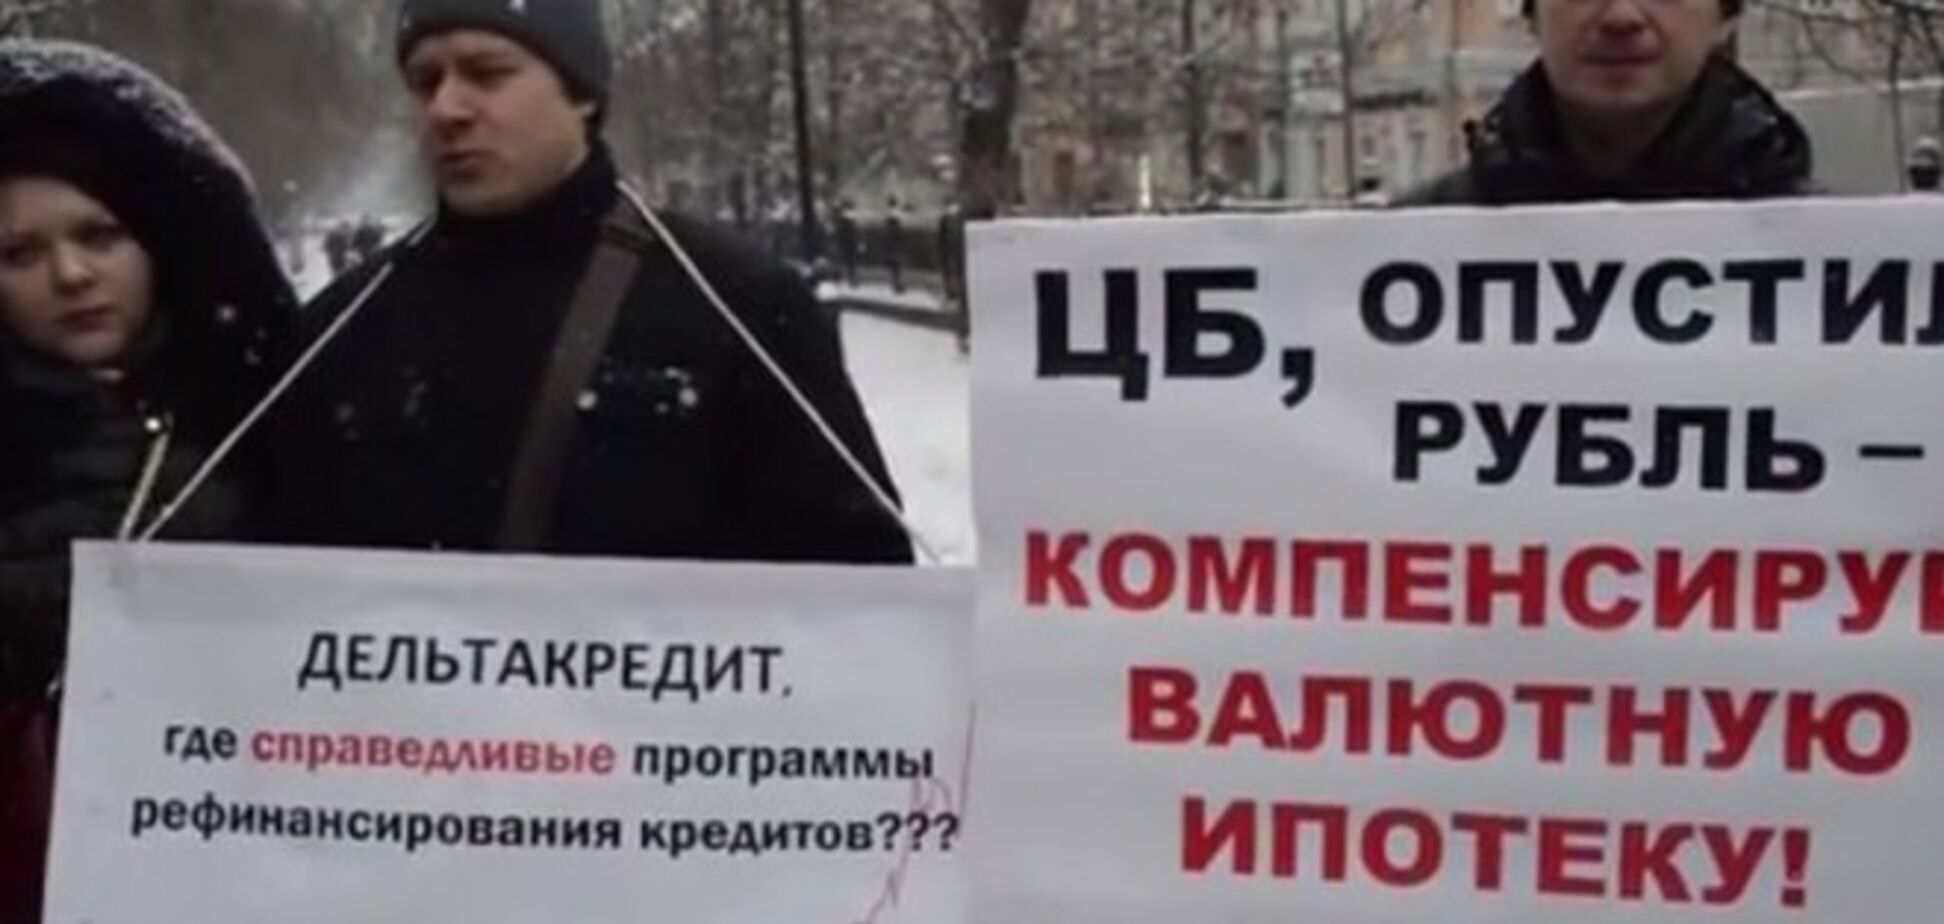 Крымнаш: взявшие валютную ипотеку москвичи устроили пикет из-за угрозы стать бомжами